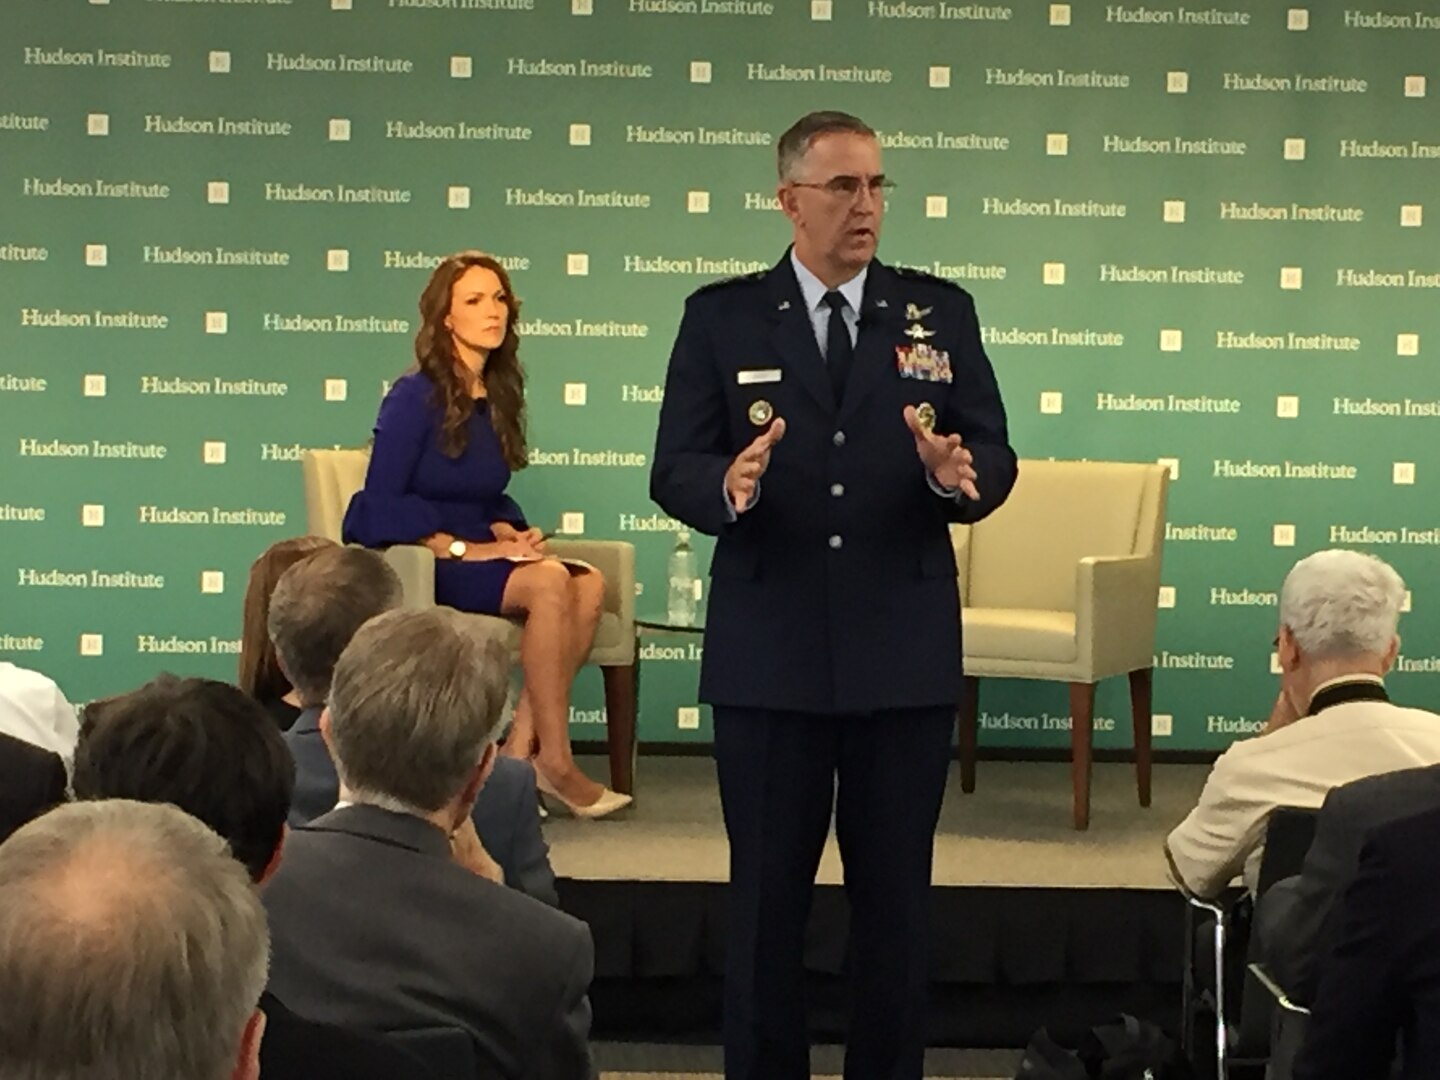 Gen. John E. Hyten, commander of U.S. Strategic Command (USSTRATCOM), delivers remarks on 21st century strategic deterrence at the Hudson Institute in Washington, D.C., Sept. 20, 2017.